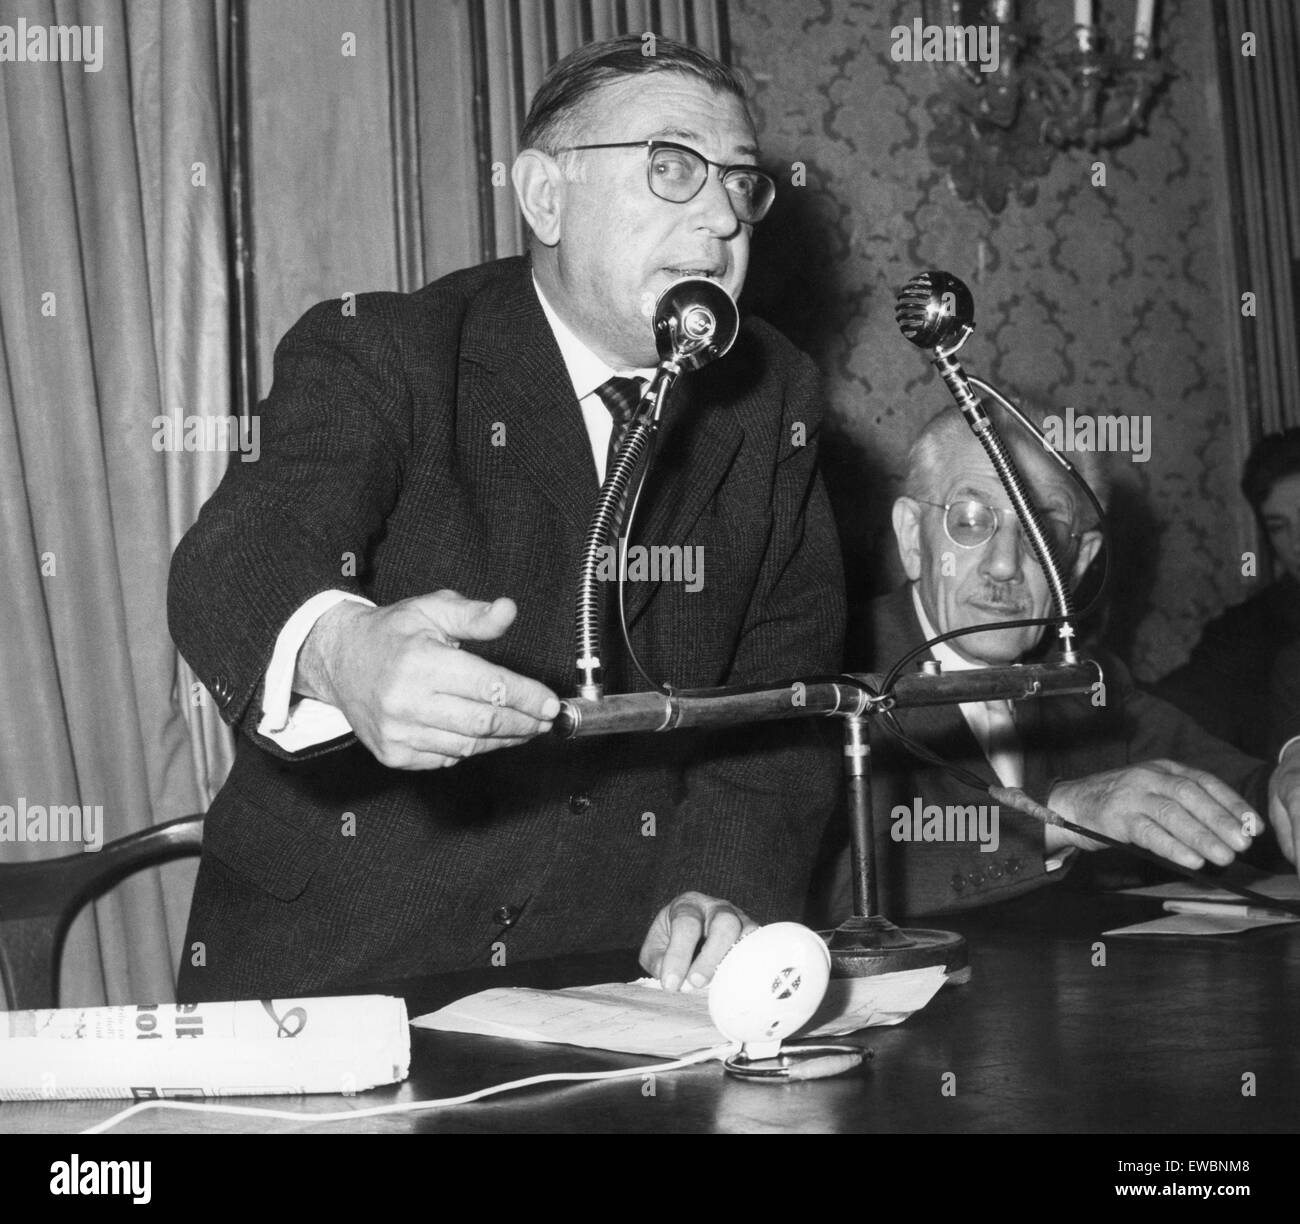 Conferenza su il problema algerino, Jean Paul Sartre, sulla destra il senatore parri, 1970-80 Foto Stock